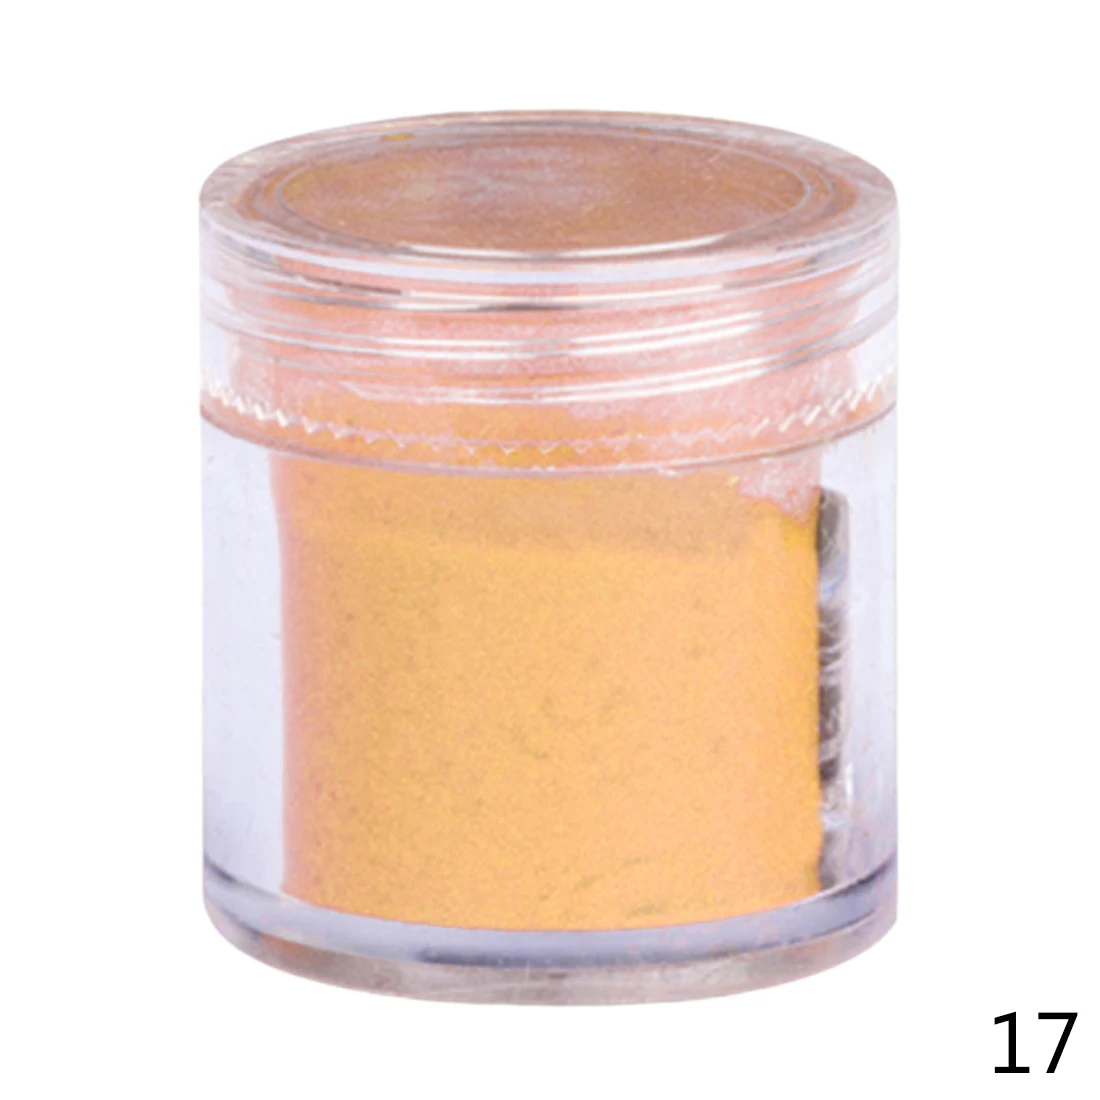 26 Цвет DIY бархатистая пудра для Бархатный маникюр ногтей лак акриловый порошки жидкости 10 г - Цвет: Pale Orange